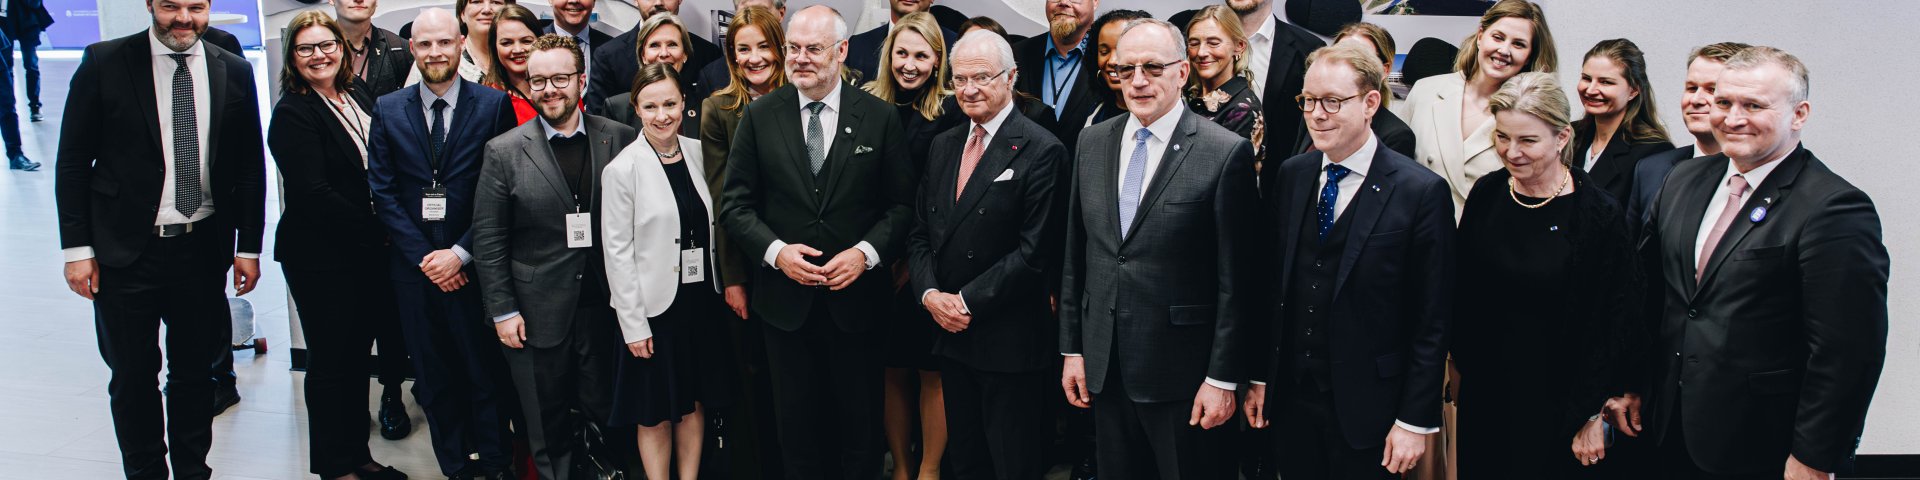 Rootsi äridelegatsioon koos Rootsi kuninga, Eesti presidendi ja Tartu Ülikooli rektoriga Delta keskuses.